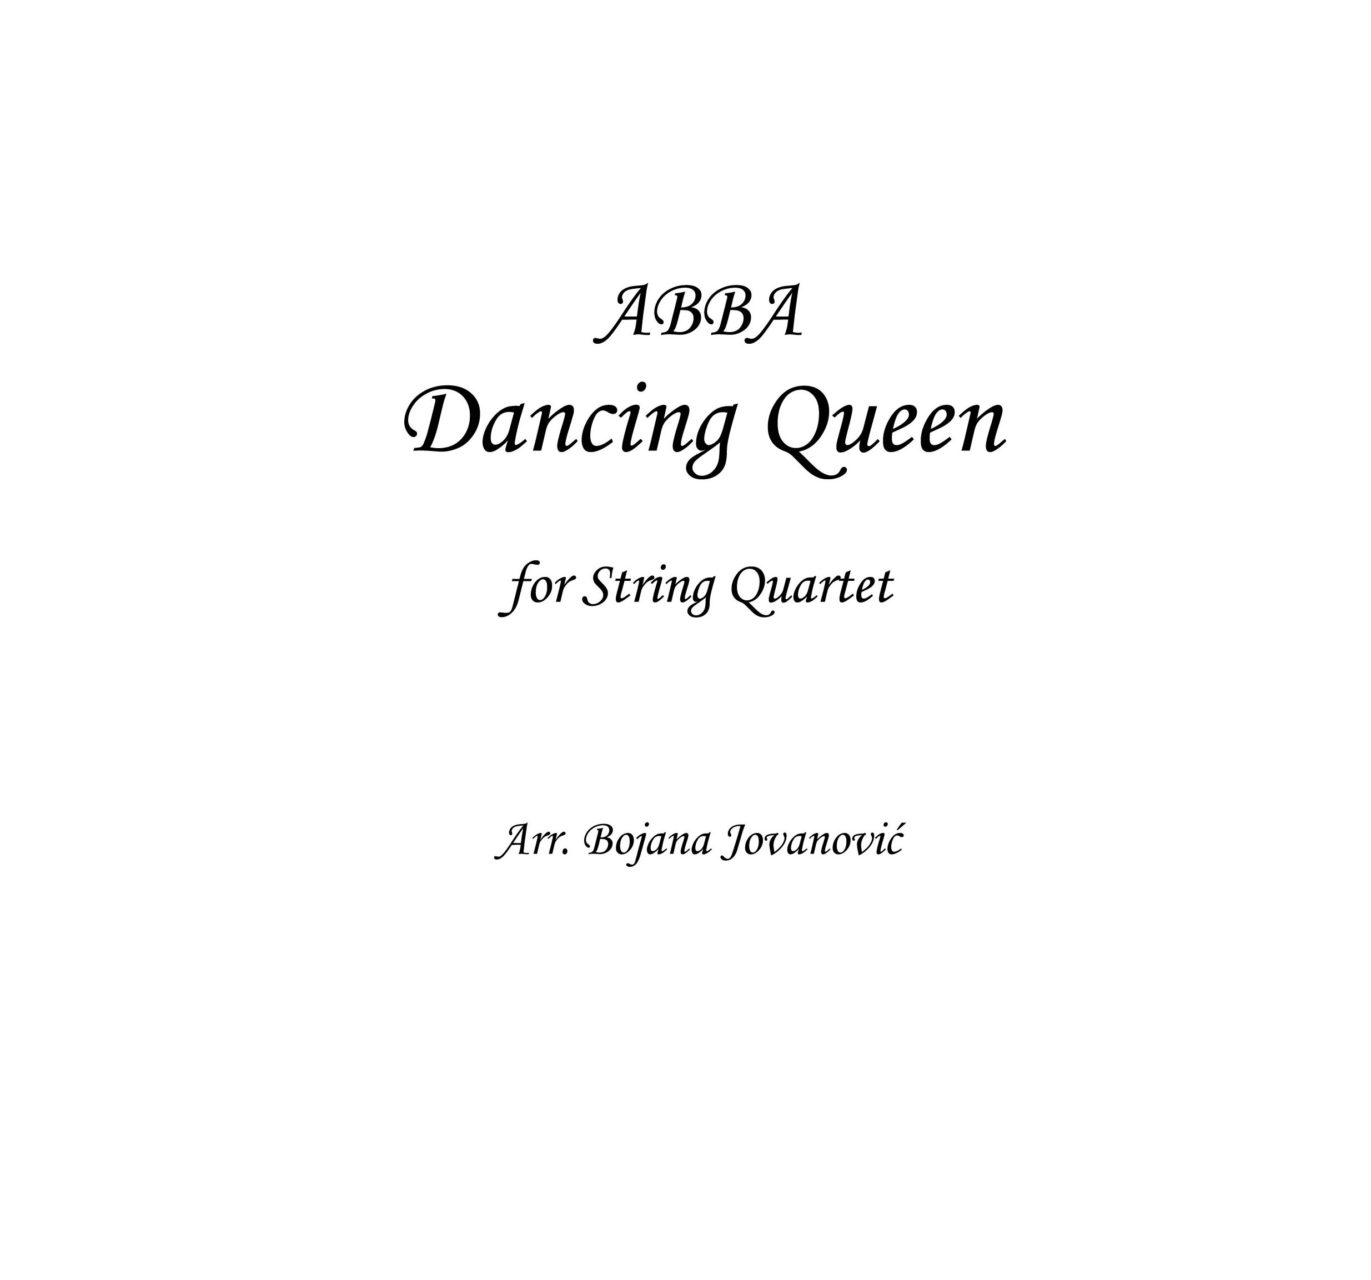 Dancing Queen Sheet Music, ABBA